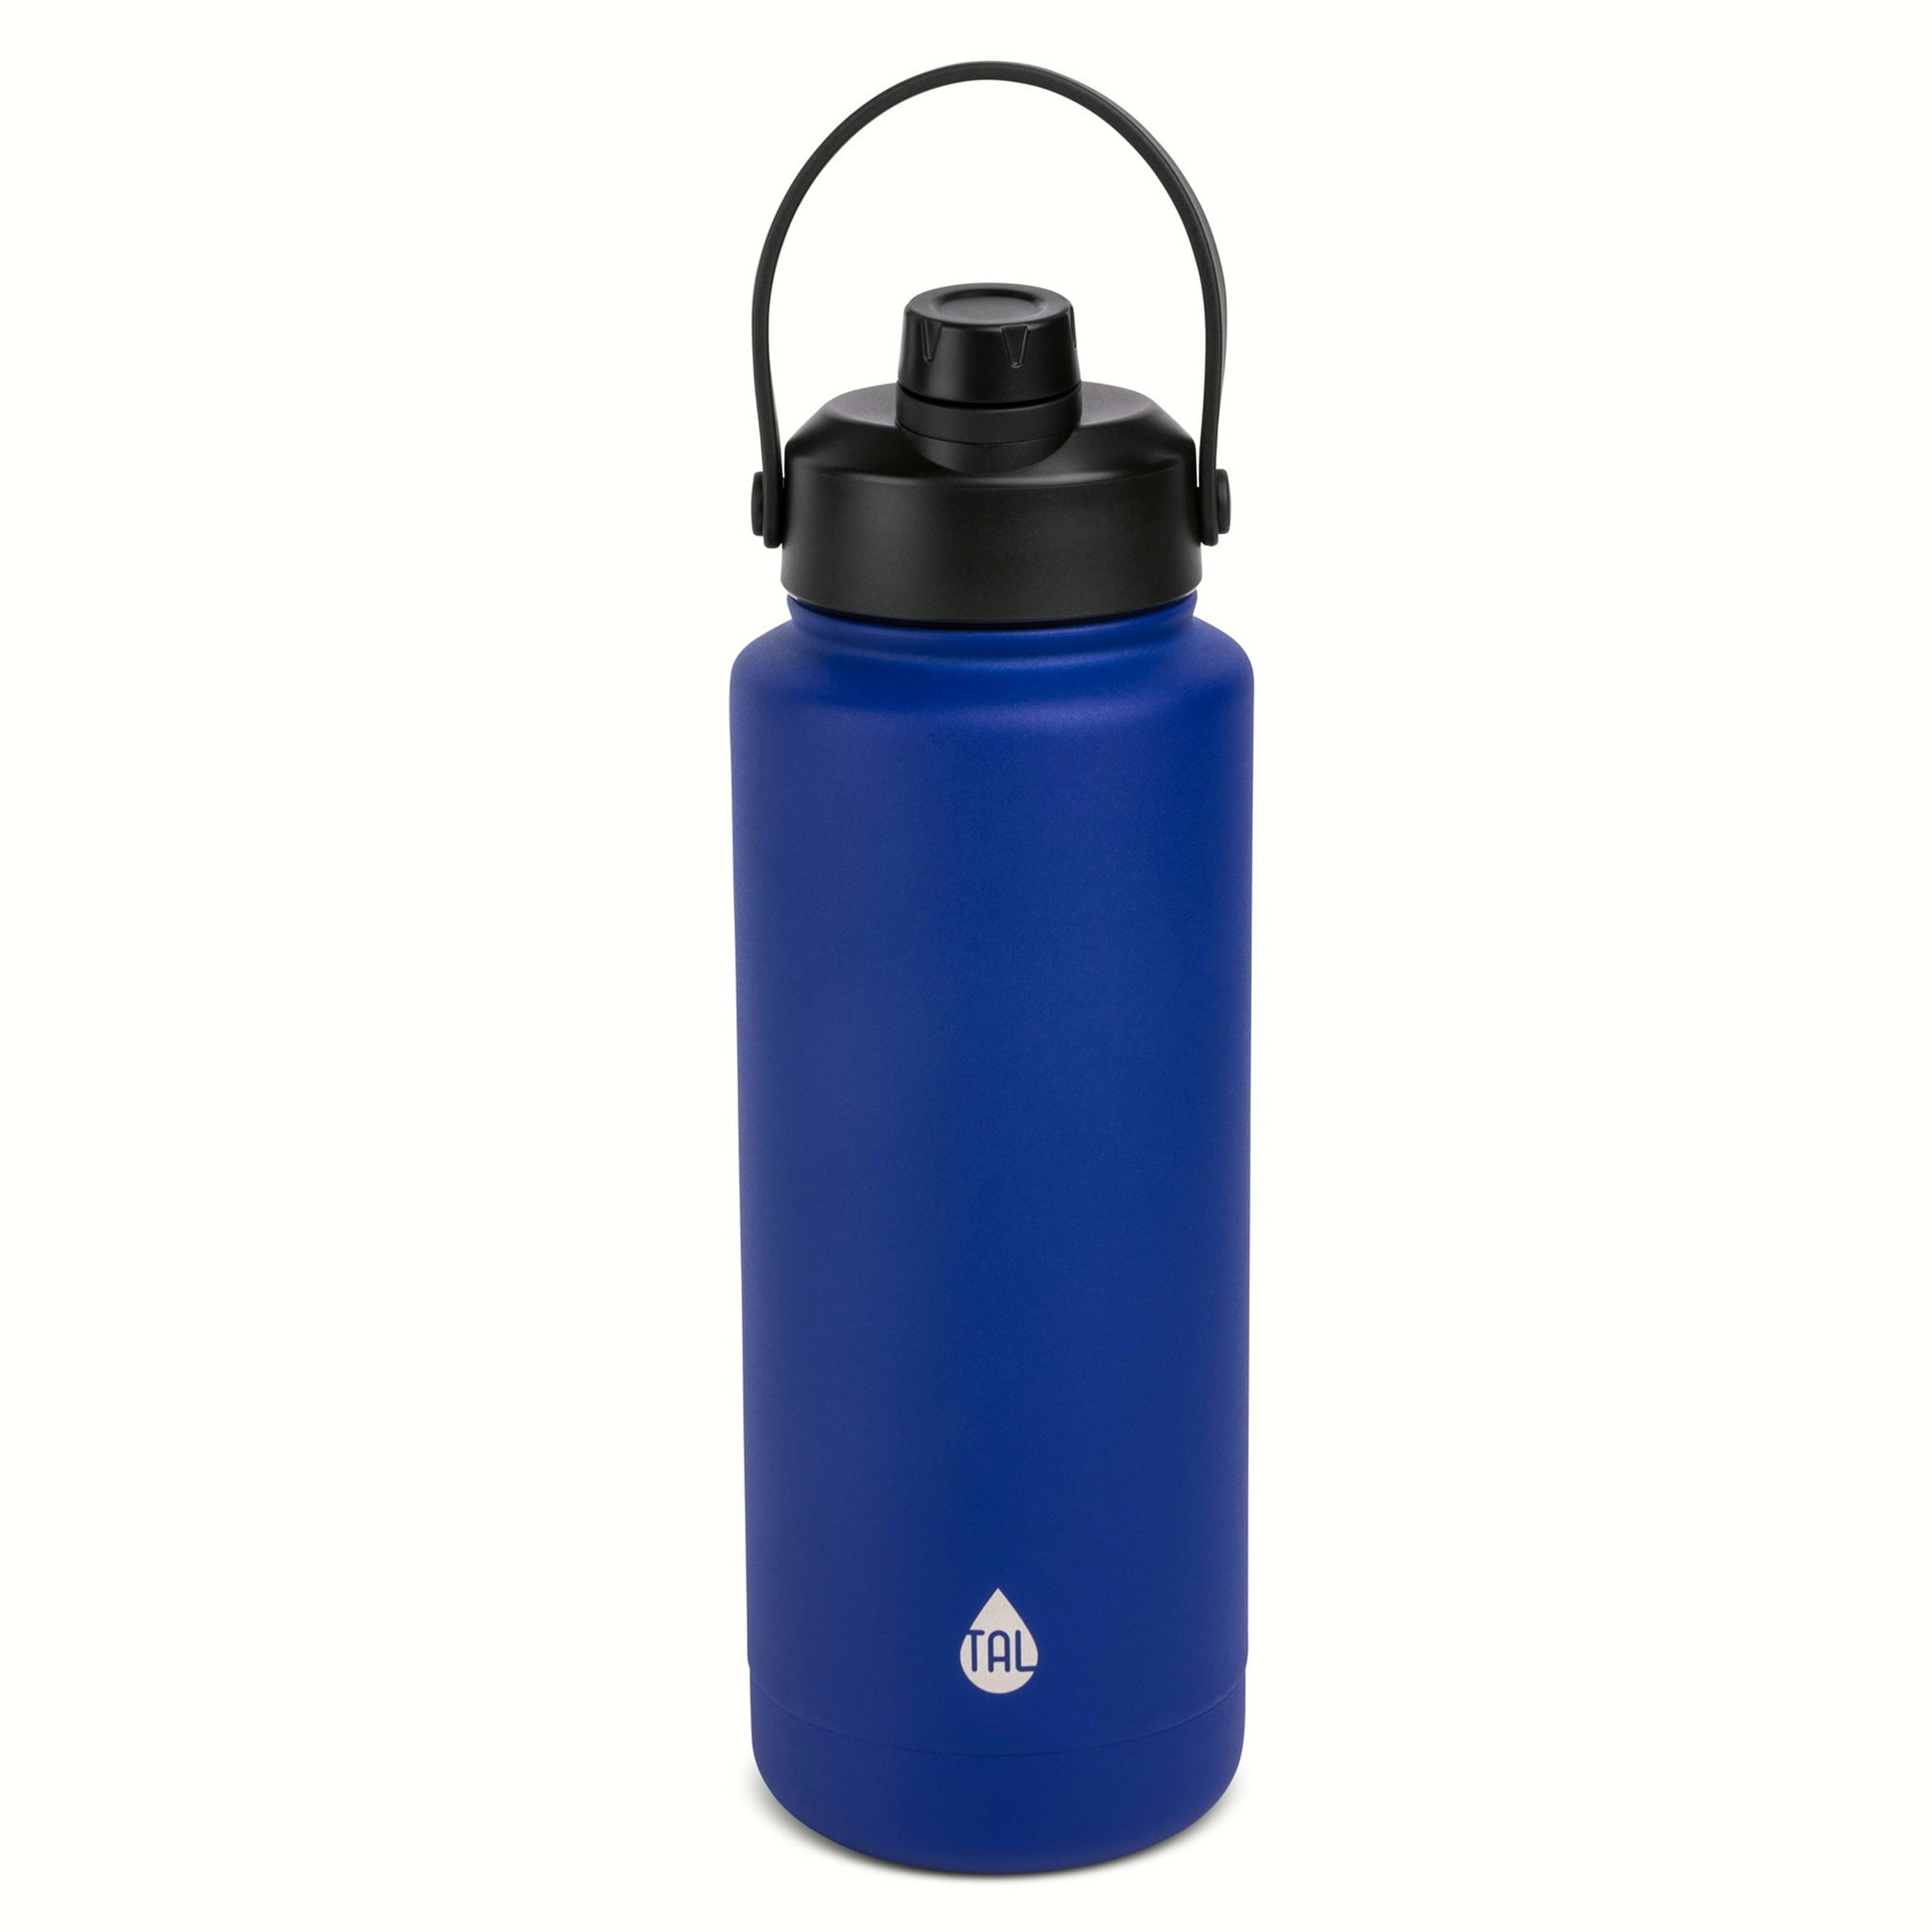 TAL Stainless Steel Ranger Grip Water Bottle 40 fl oz, Mint